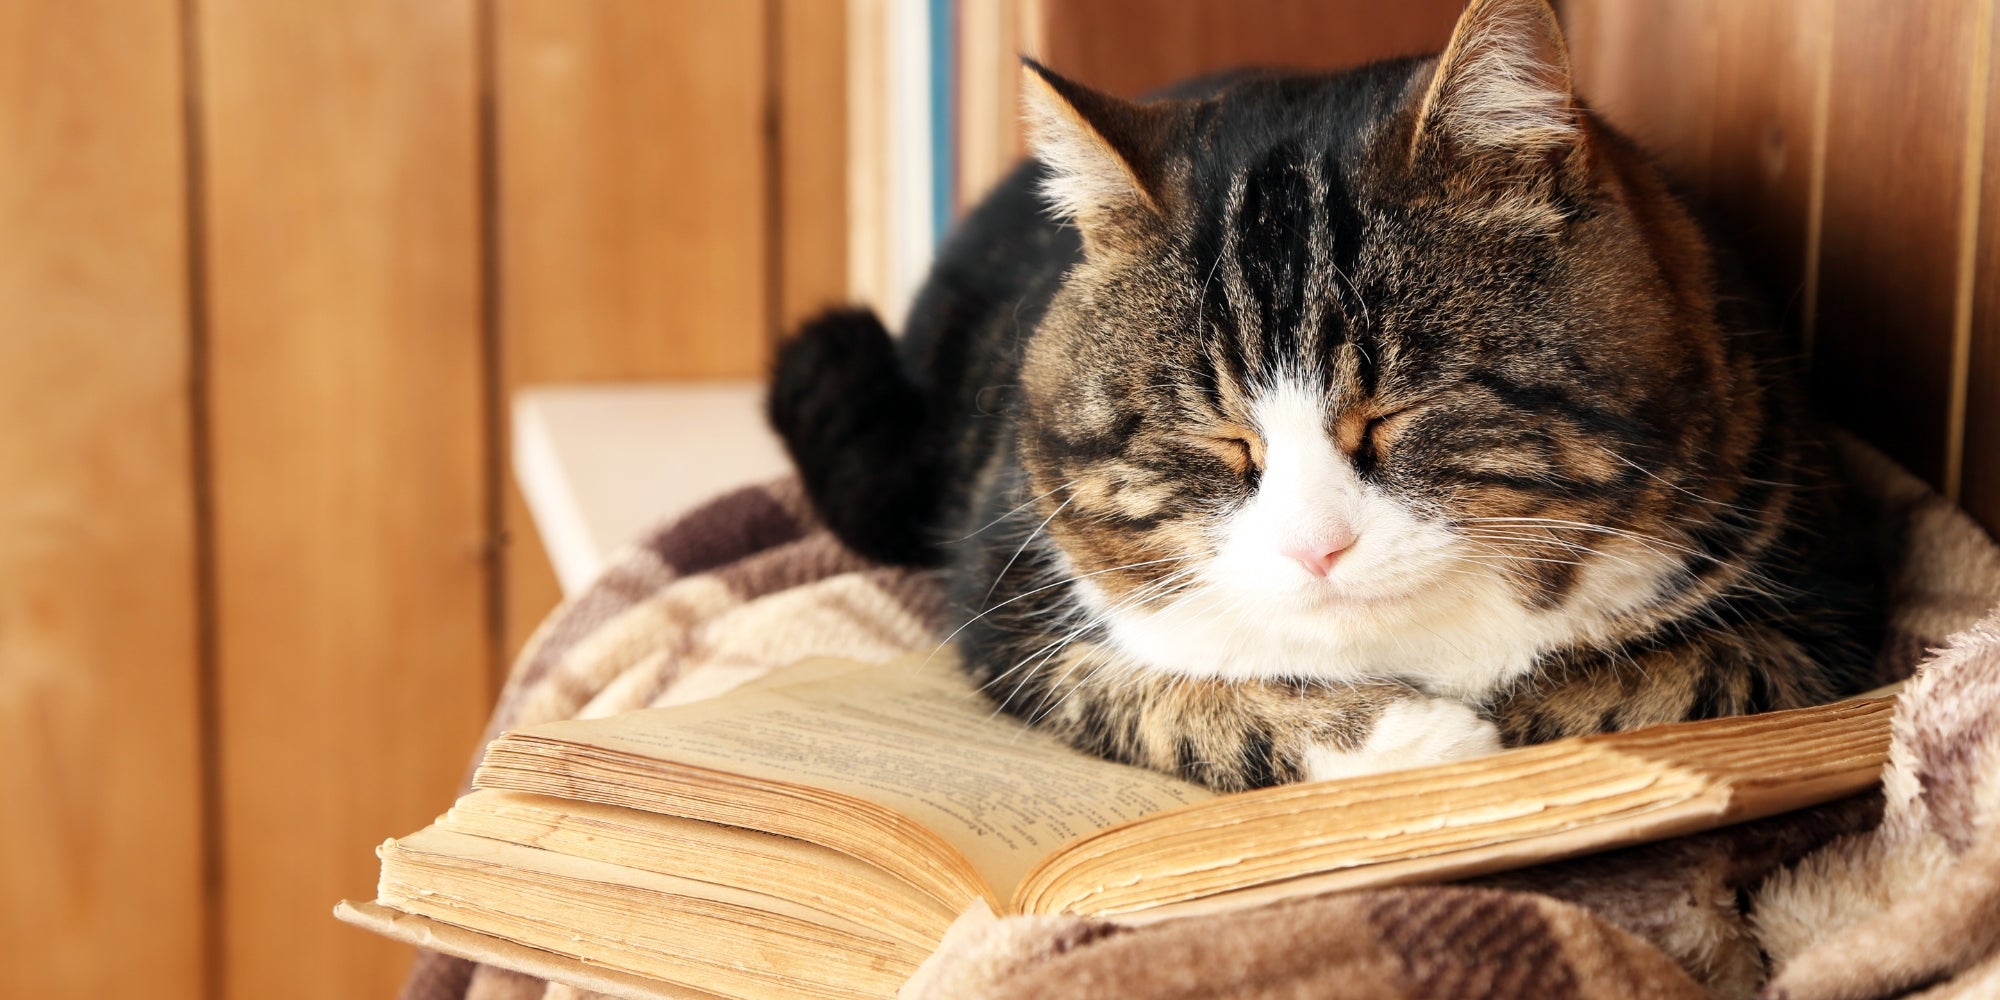 gato viejo durmiendo sobre libro viejo y manta escocesa